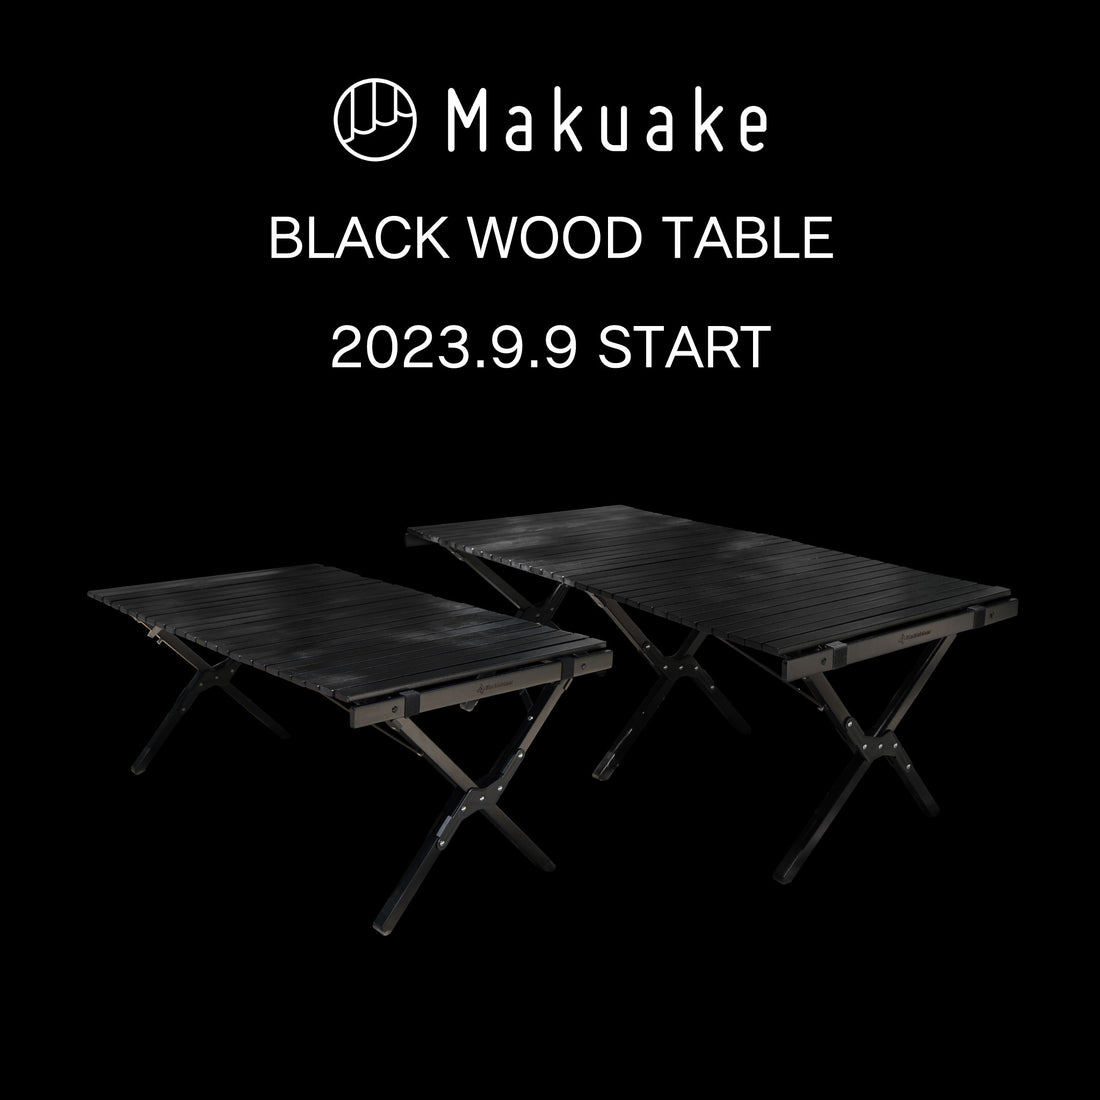 漆黒の天然木ロールテーブルが応援購入サービスMakuakeにてクラウドファンディングを開始！